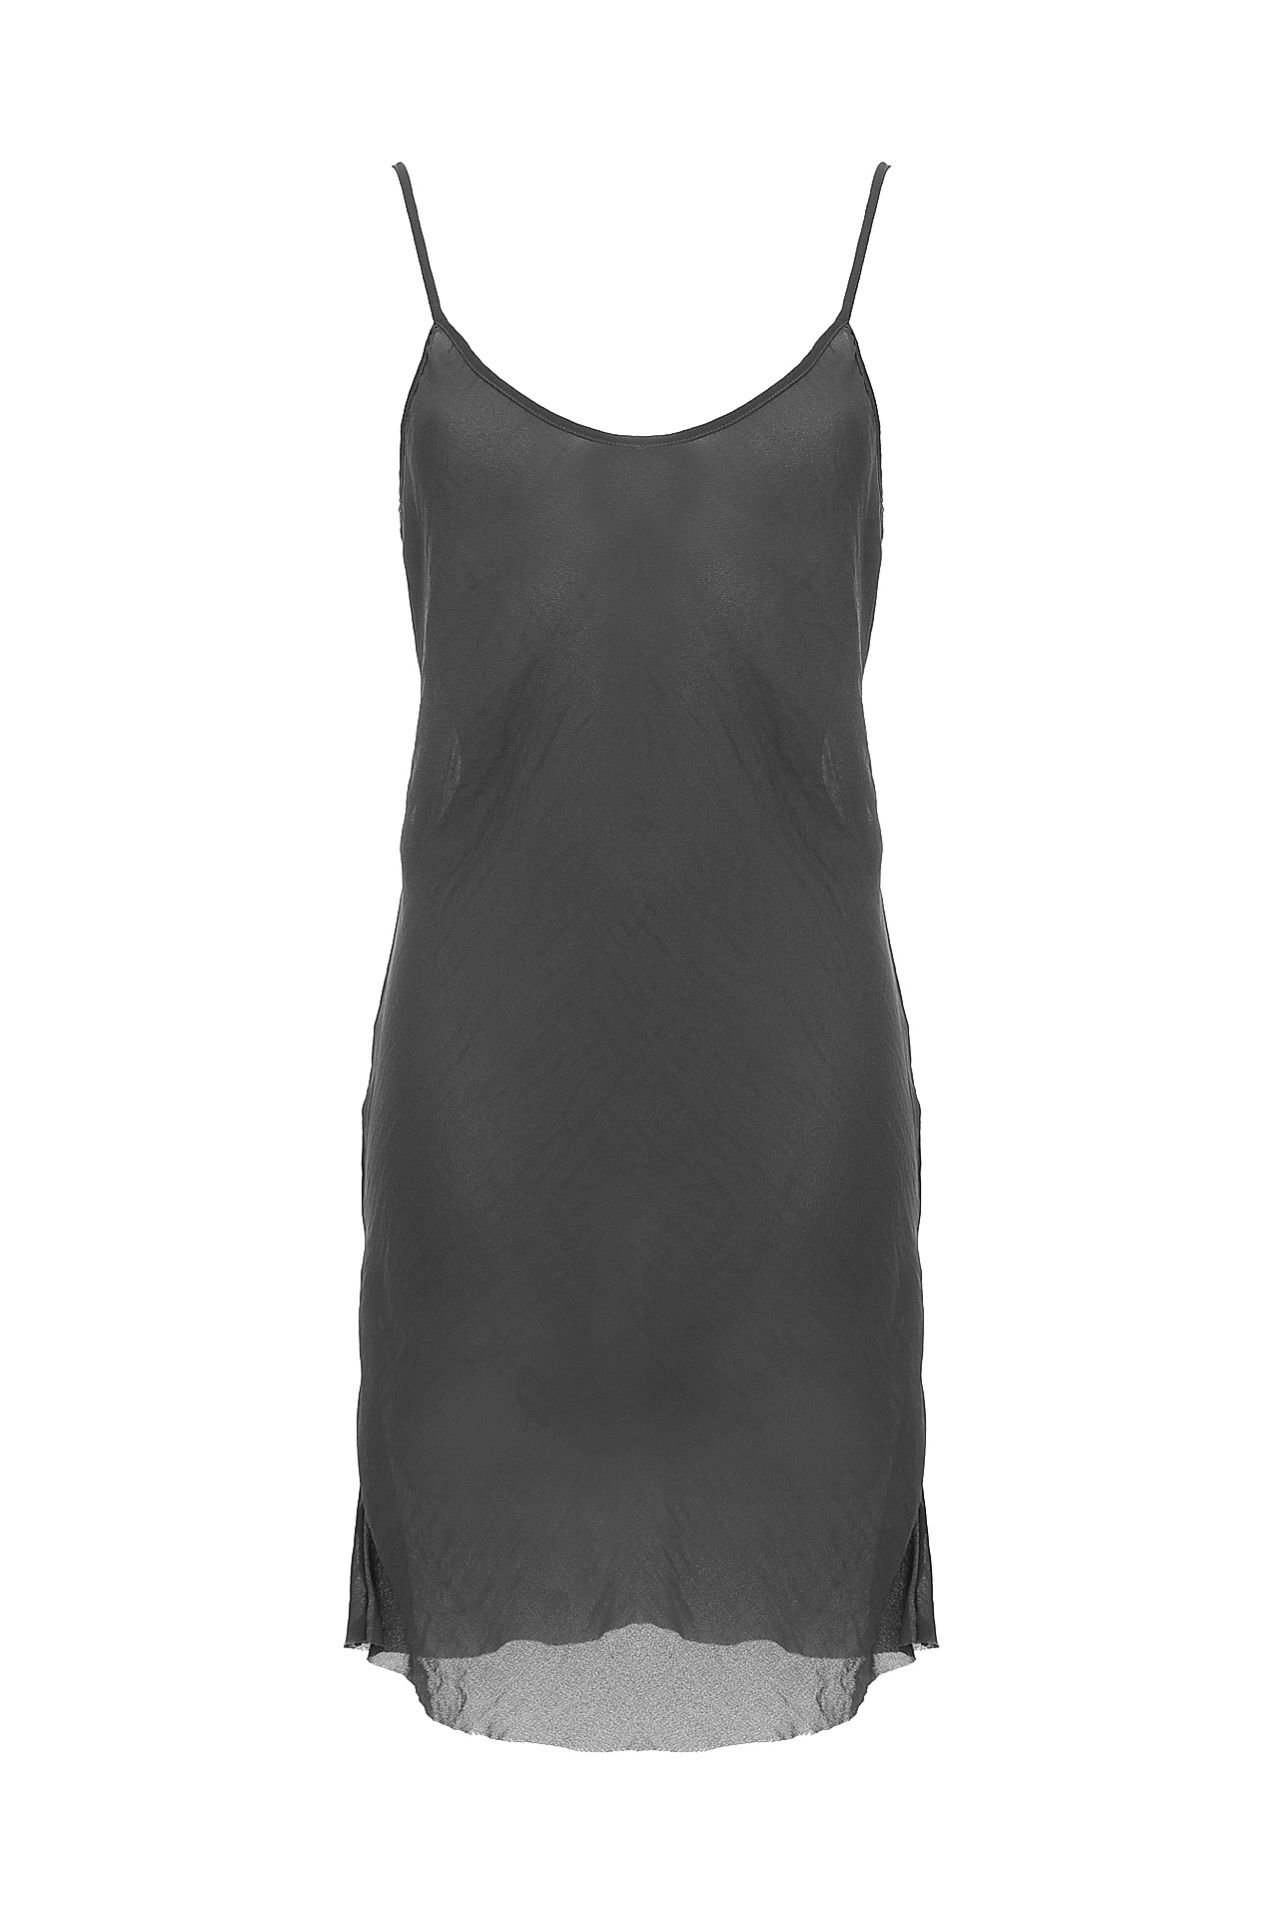 Одежда женская Платье-комбинация LIVIANA CONTI (L3ET36/13.1). Купить за 4400 руб.